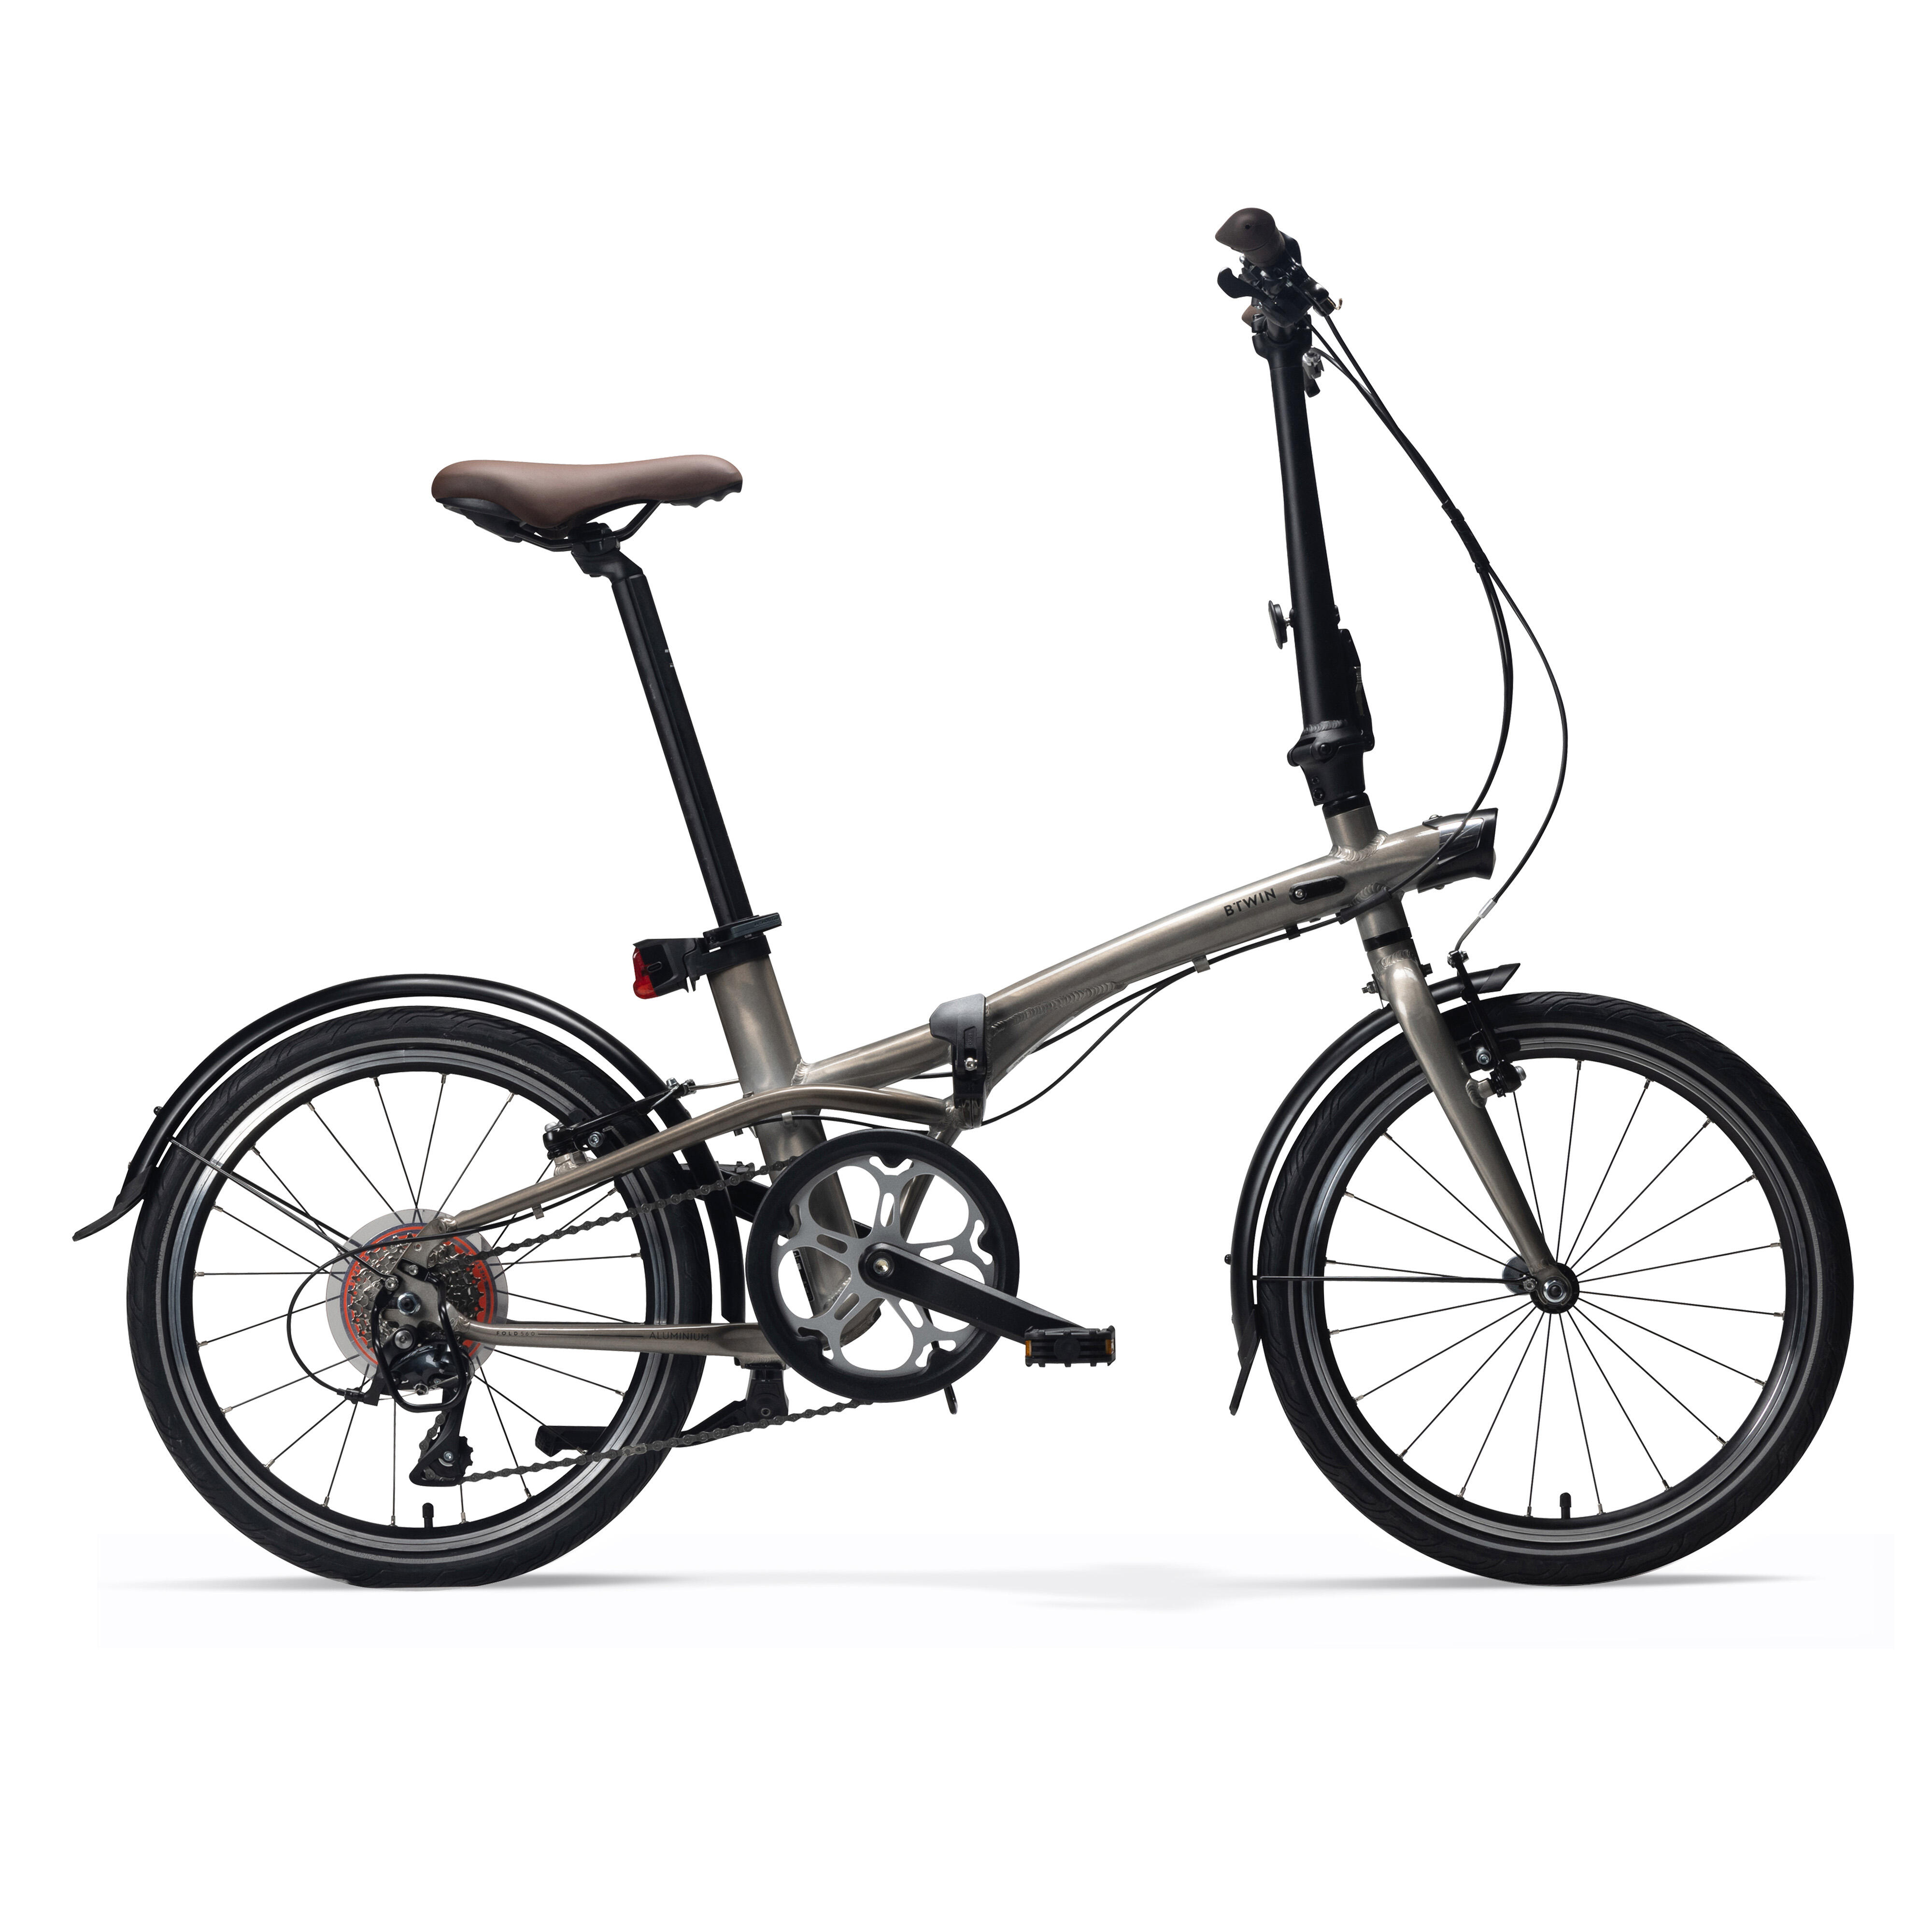 Bicicletă pliabilă TILT 560 Aluminiu La Oferta Online BTWIN imagine La Oferta Online